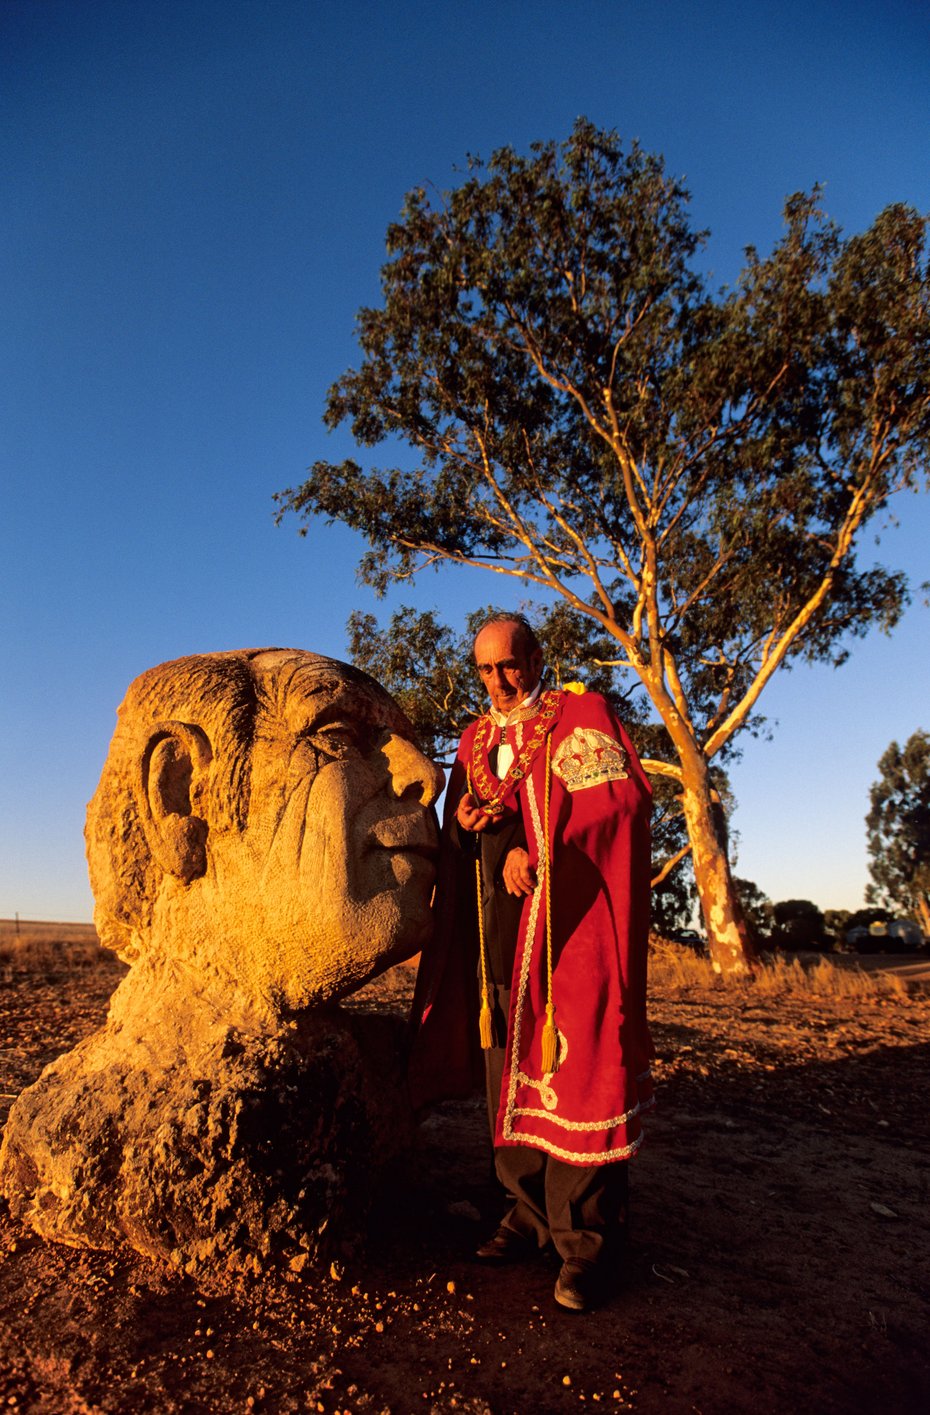 His Royal Highness Pince Leonard I of Hutt in alta uniforme posa di fianco alla sua statua. Australia (WA)